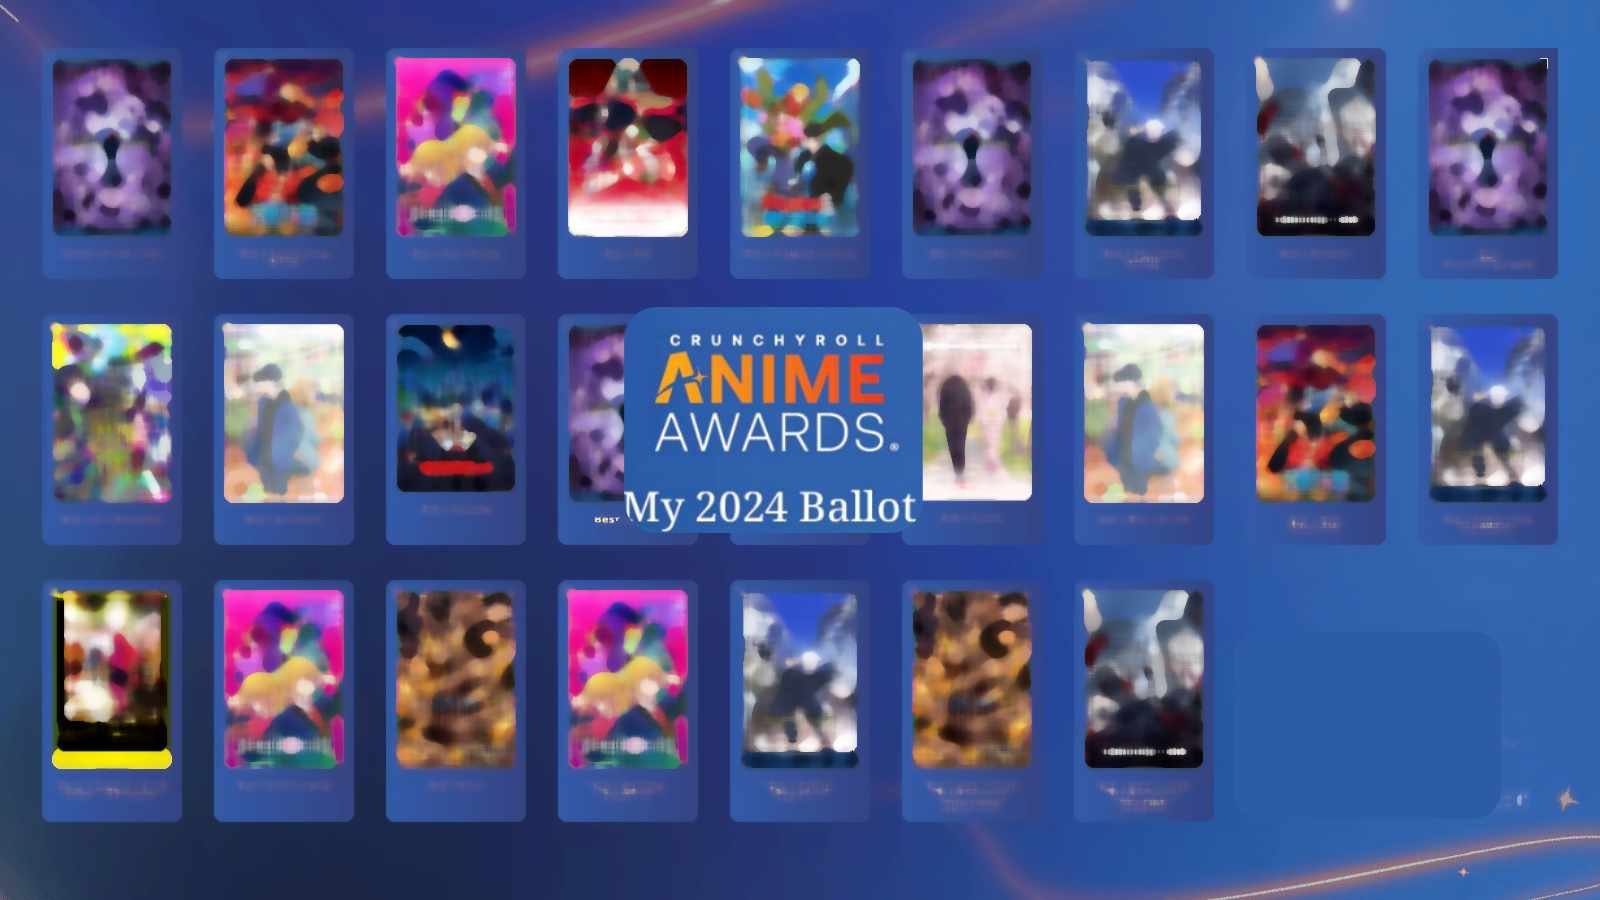 Anime Awards 2024 by Crunchyroll Ballot Paper of